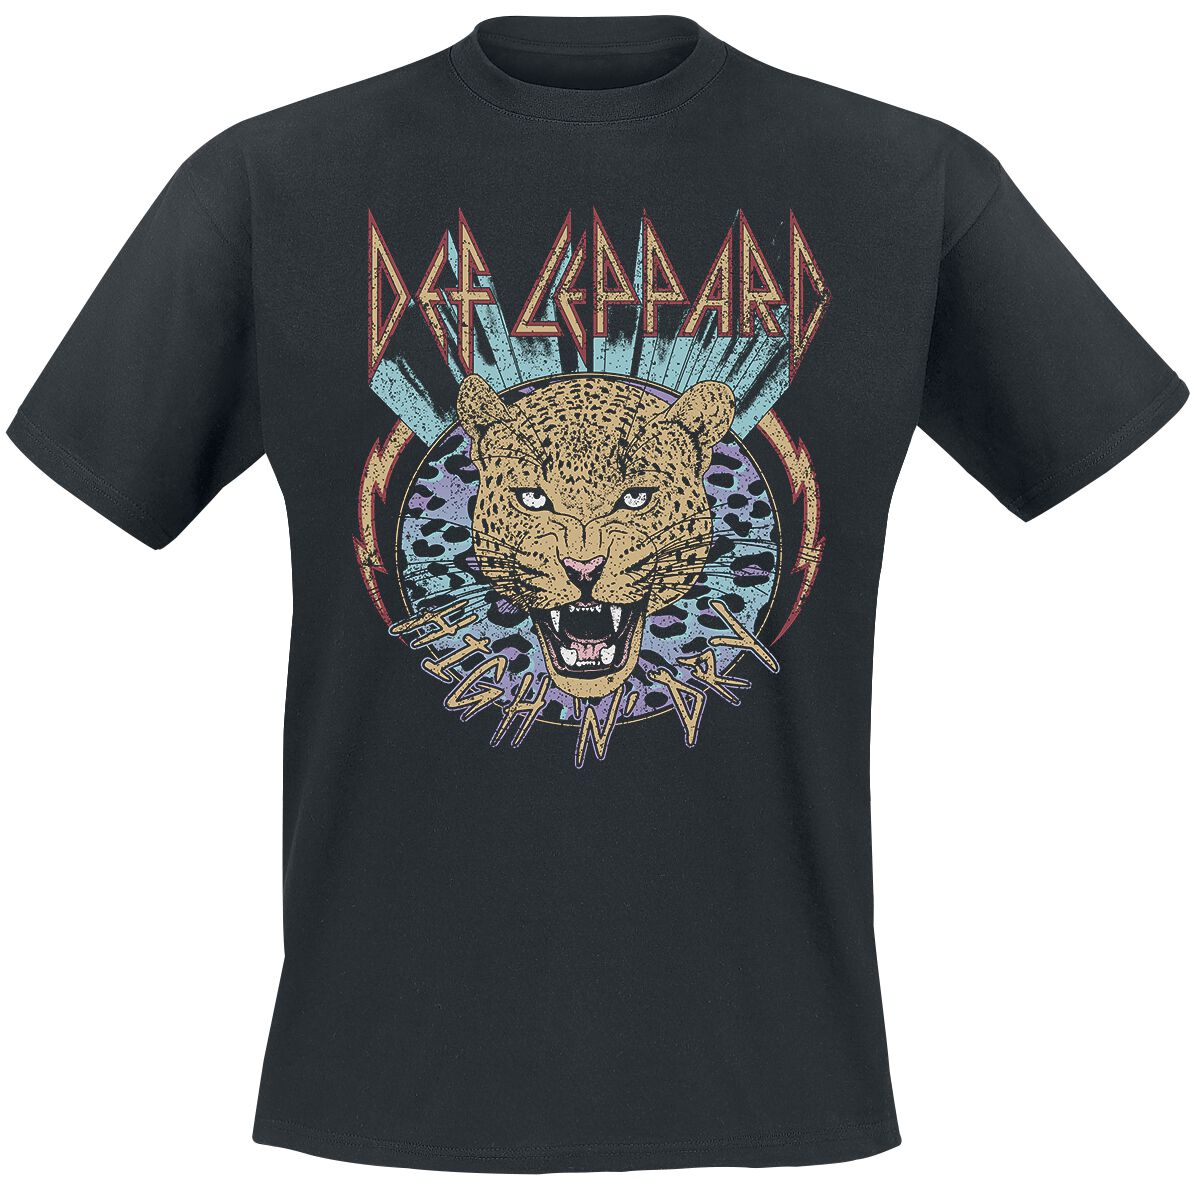 Def Leppard T-Shirt - High N Dry Leopard - M bis 3XL - für Männer - Größe XXL - schwarz  - Lizenziertes Merchandise!